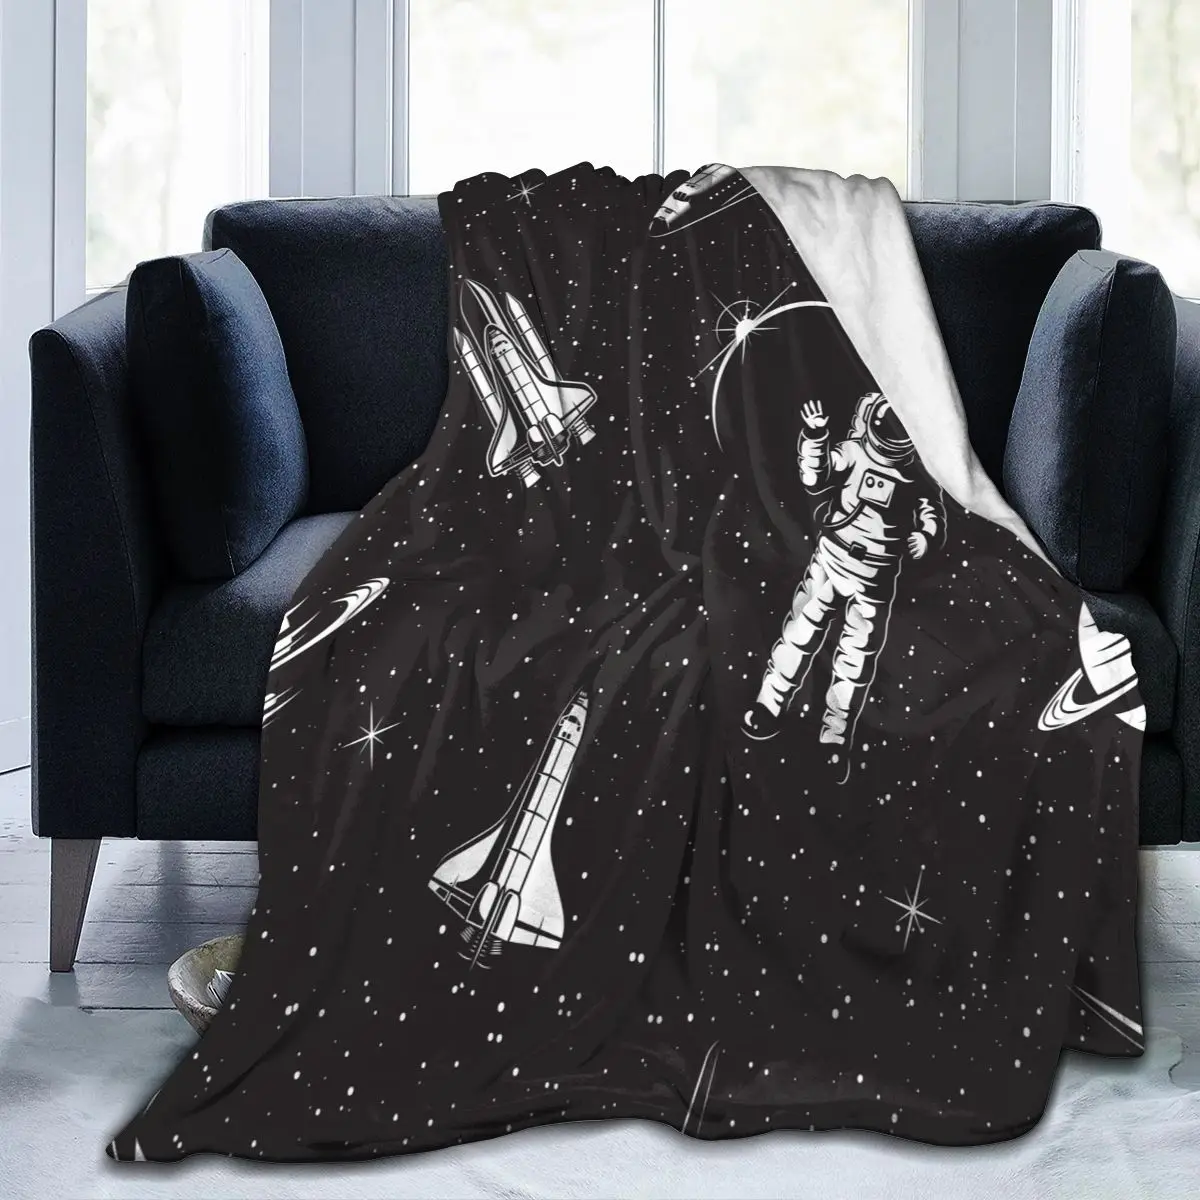 

Уникальное одеяло для семьи, друзей, Космический узор, прочное супермягкое удобное домашнее Подарочное одеяло